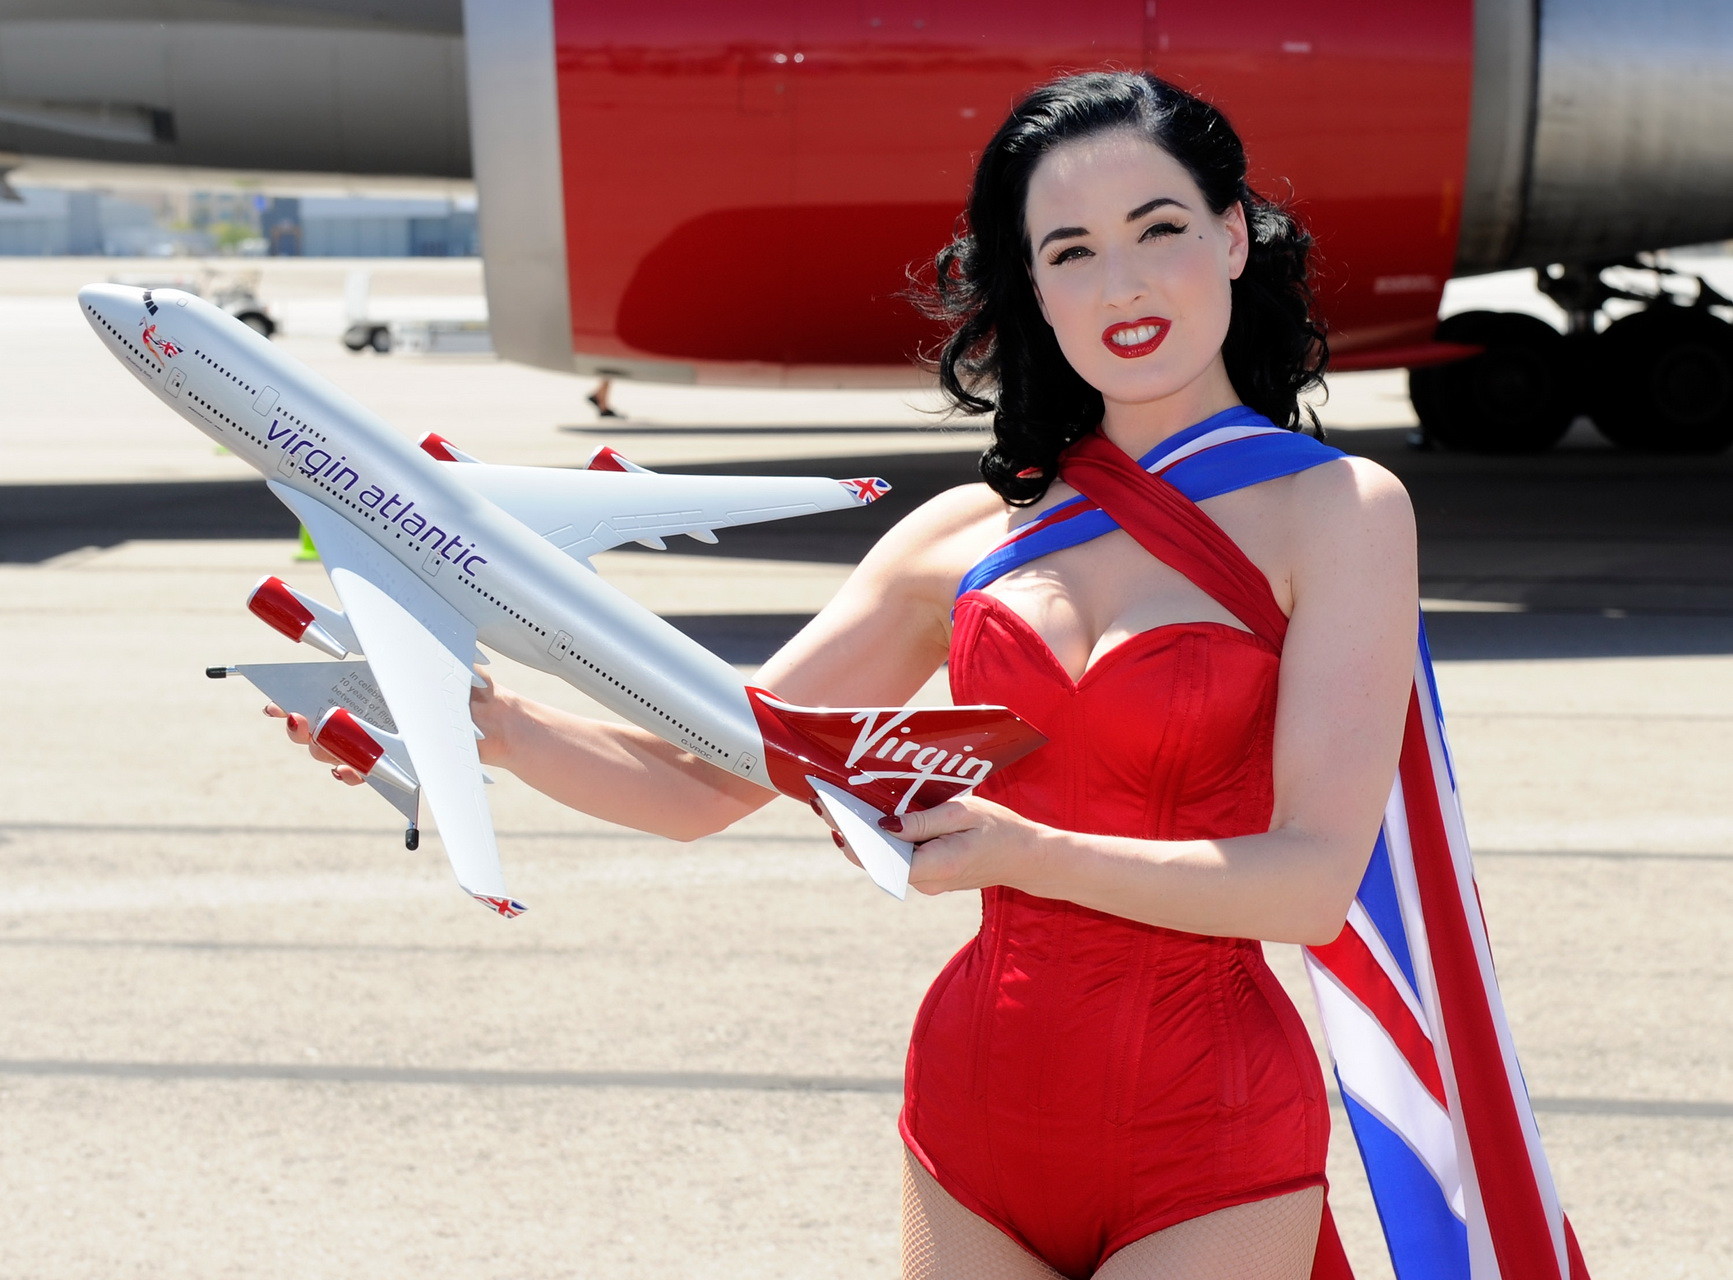 Dita von teese portant un corset rouge à résilles lors de la célébration de Virgin Atlantic
 #75344879